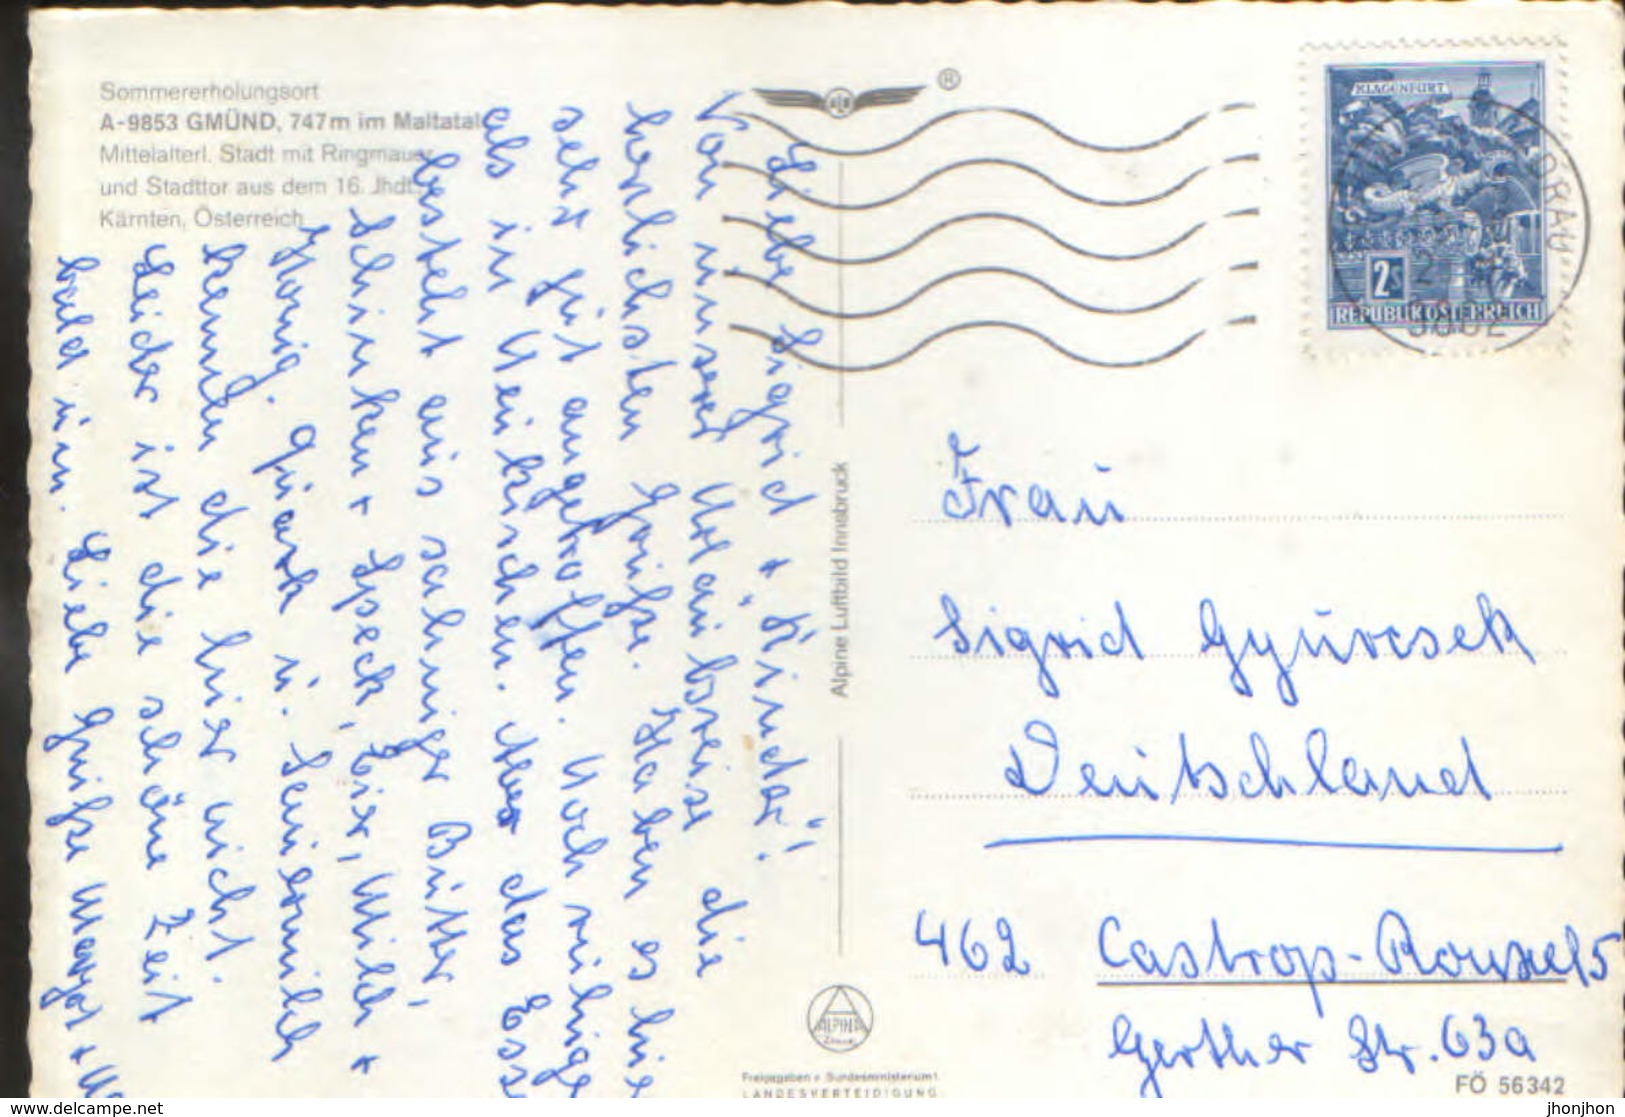 Osterreich - Postcard  Circulated In 1970 - Gmünd - Partial Aerial View - 2/scans - Gmünd